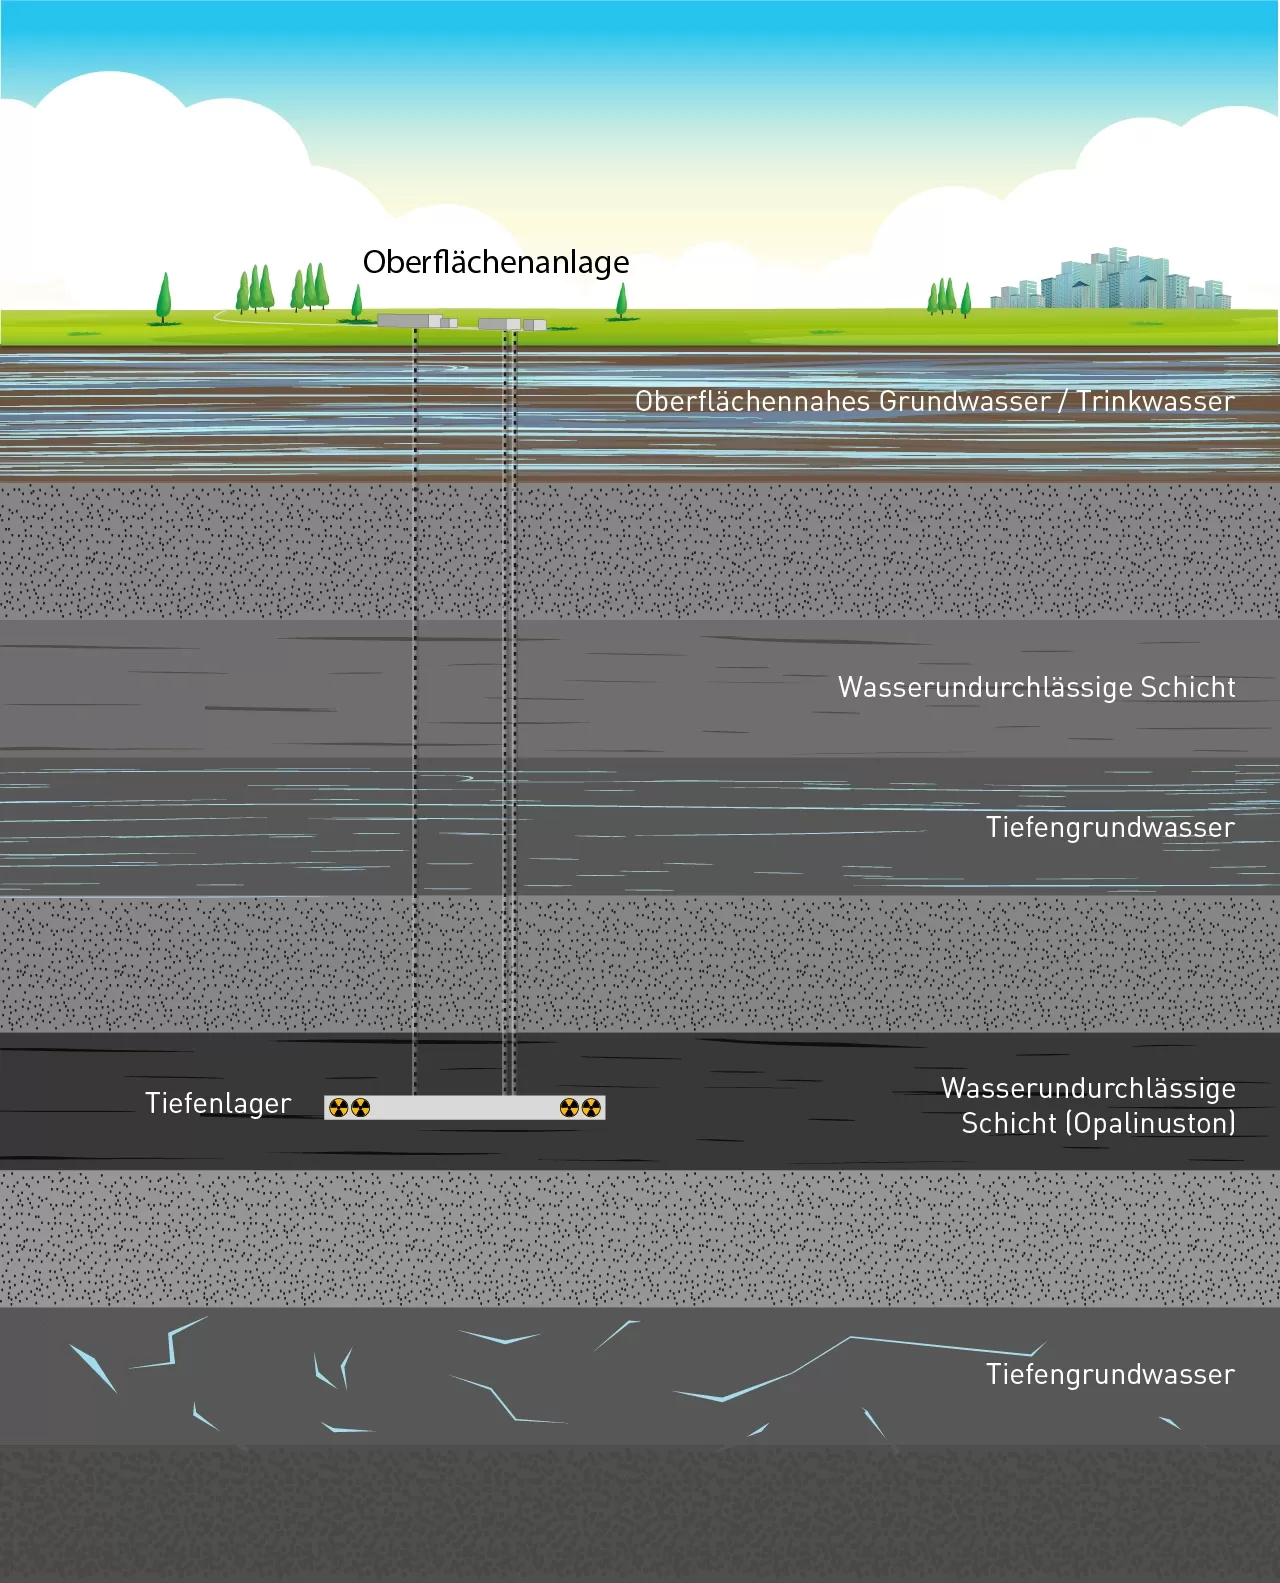 Schematische Darstellung der verschiedenen Arten von Grundwasser inkl. Tiefenlager.